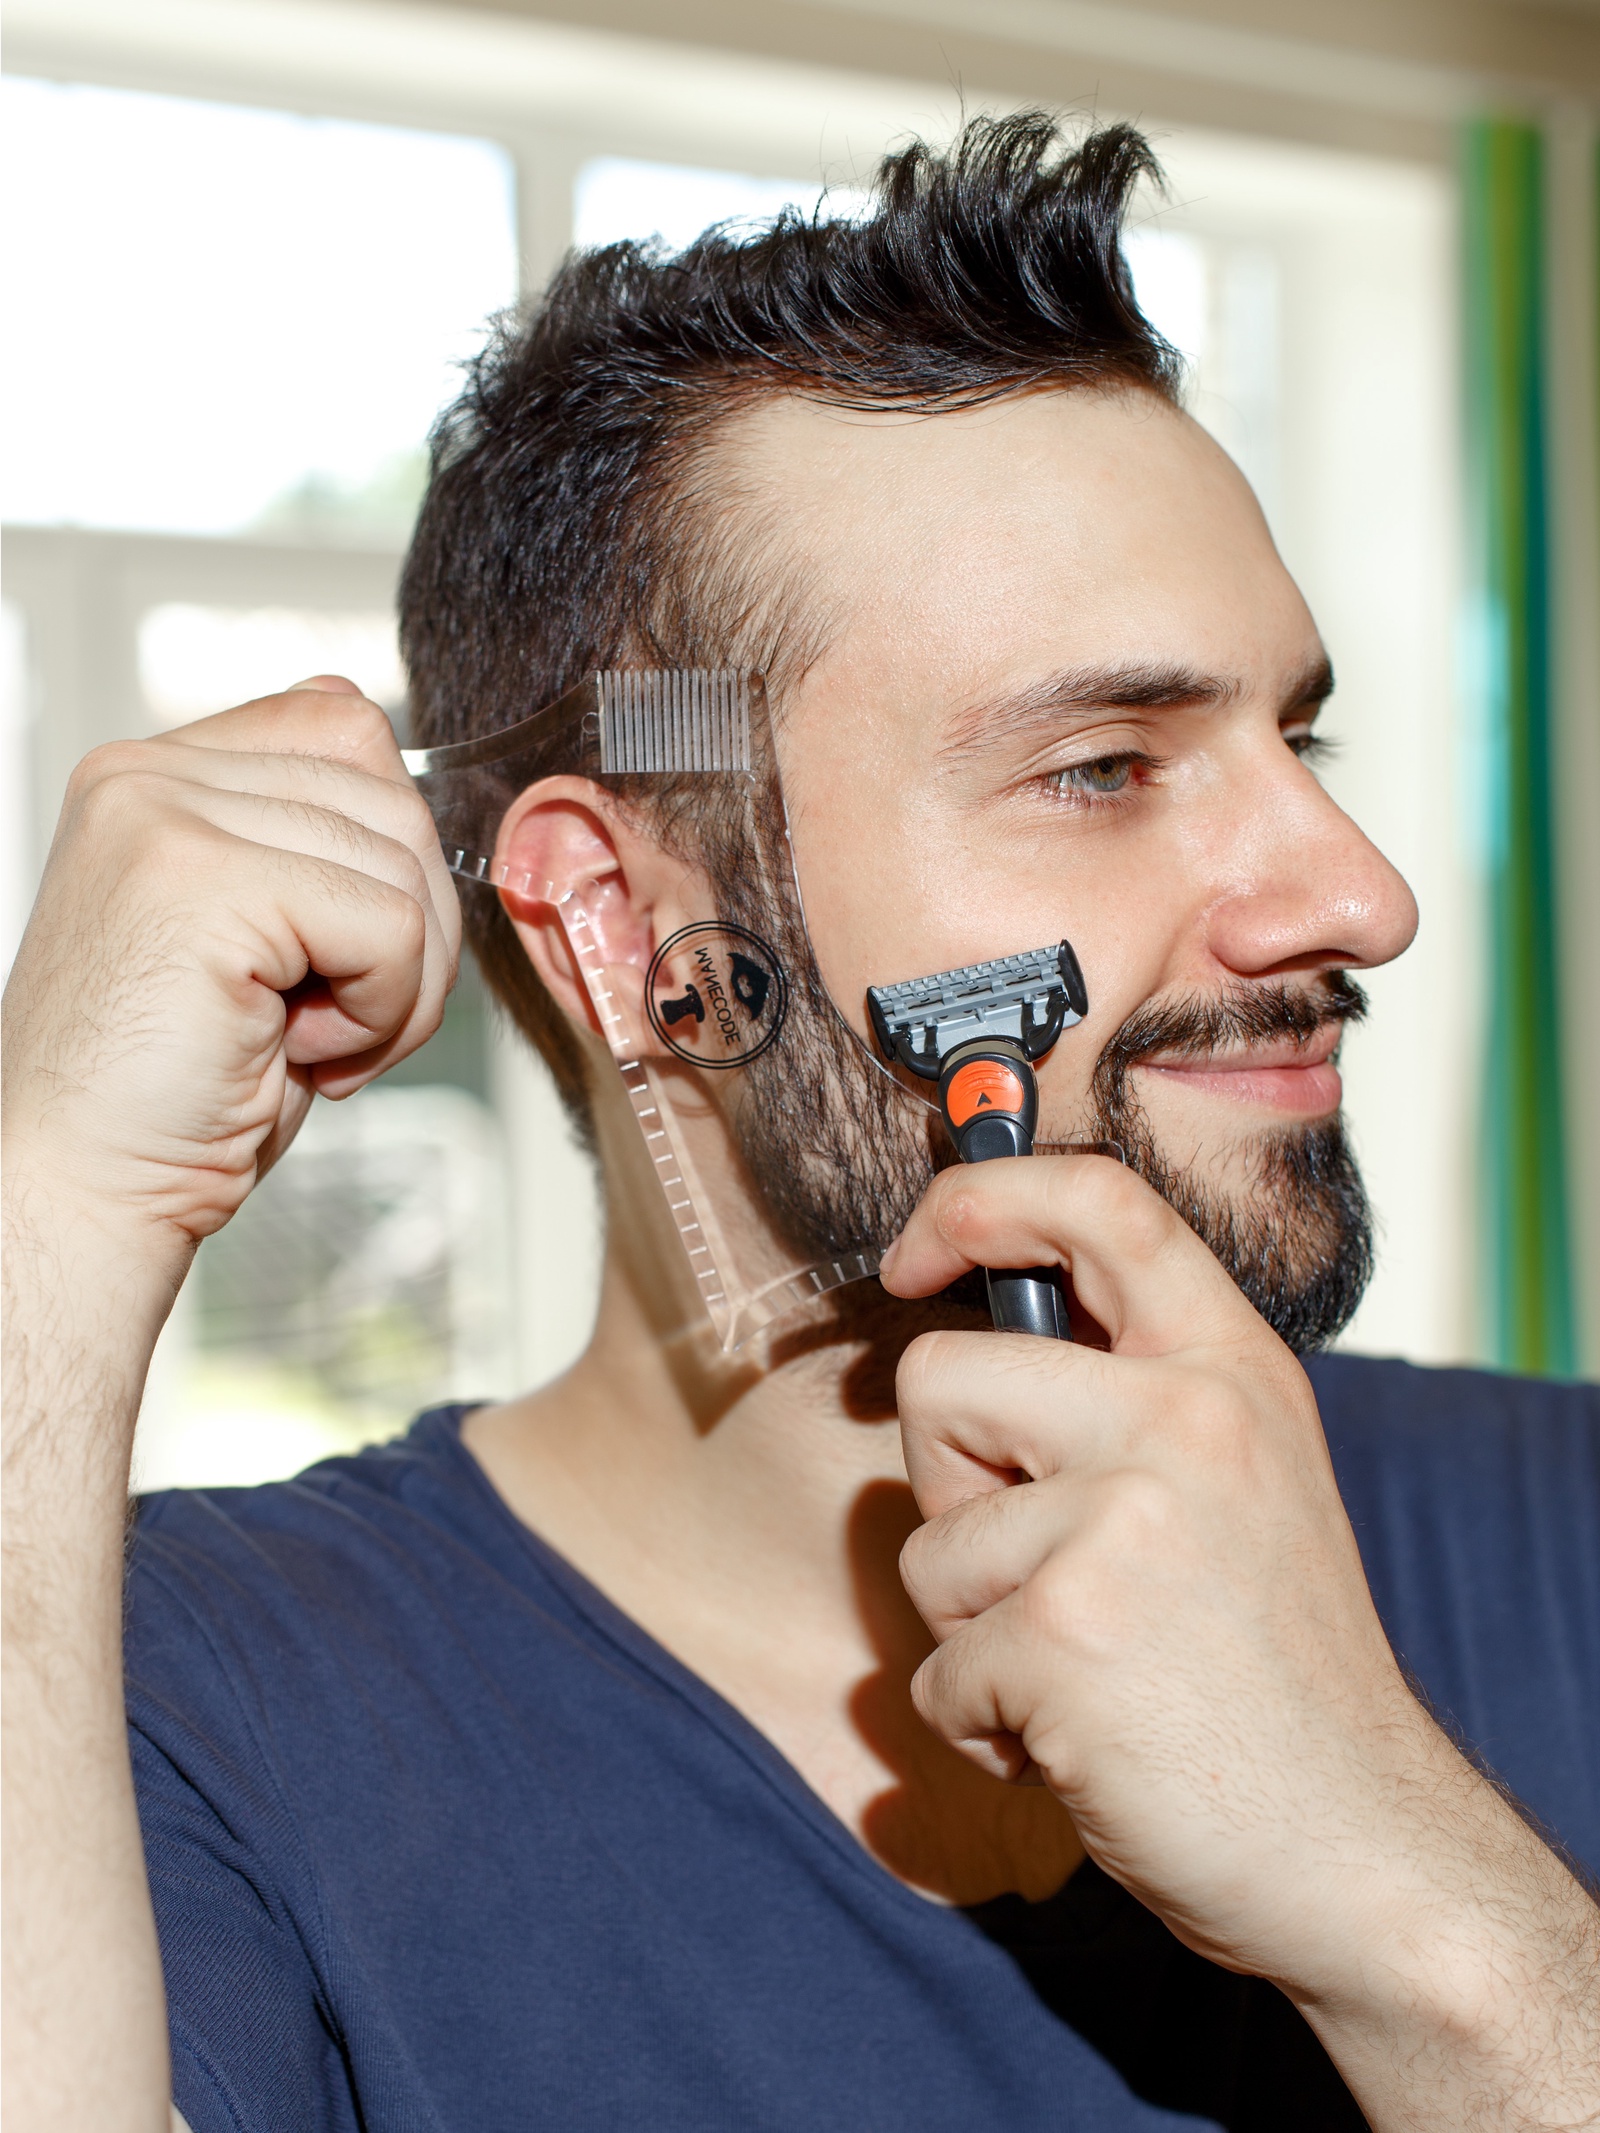 Как побриться красиво бороду: видеинструкция как правильно подстригать бороду